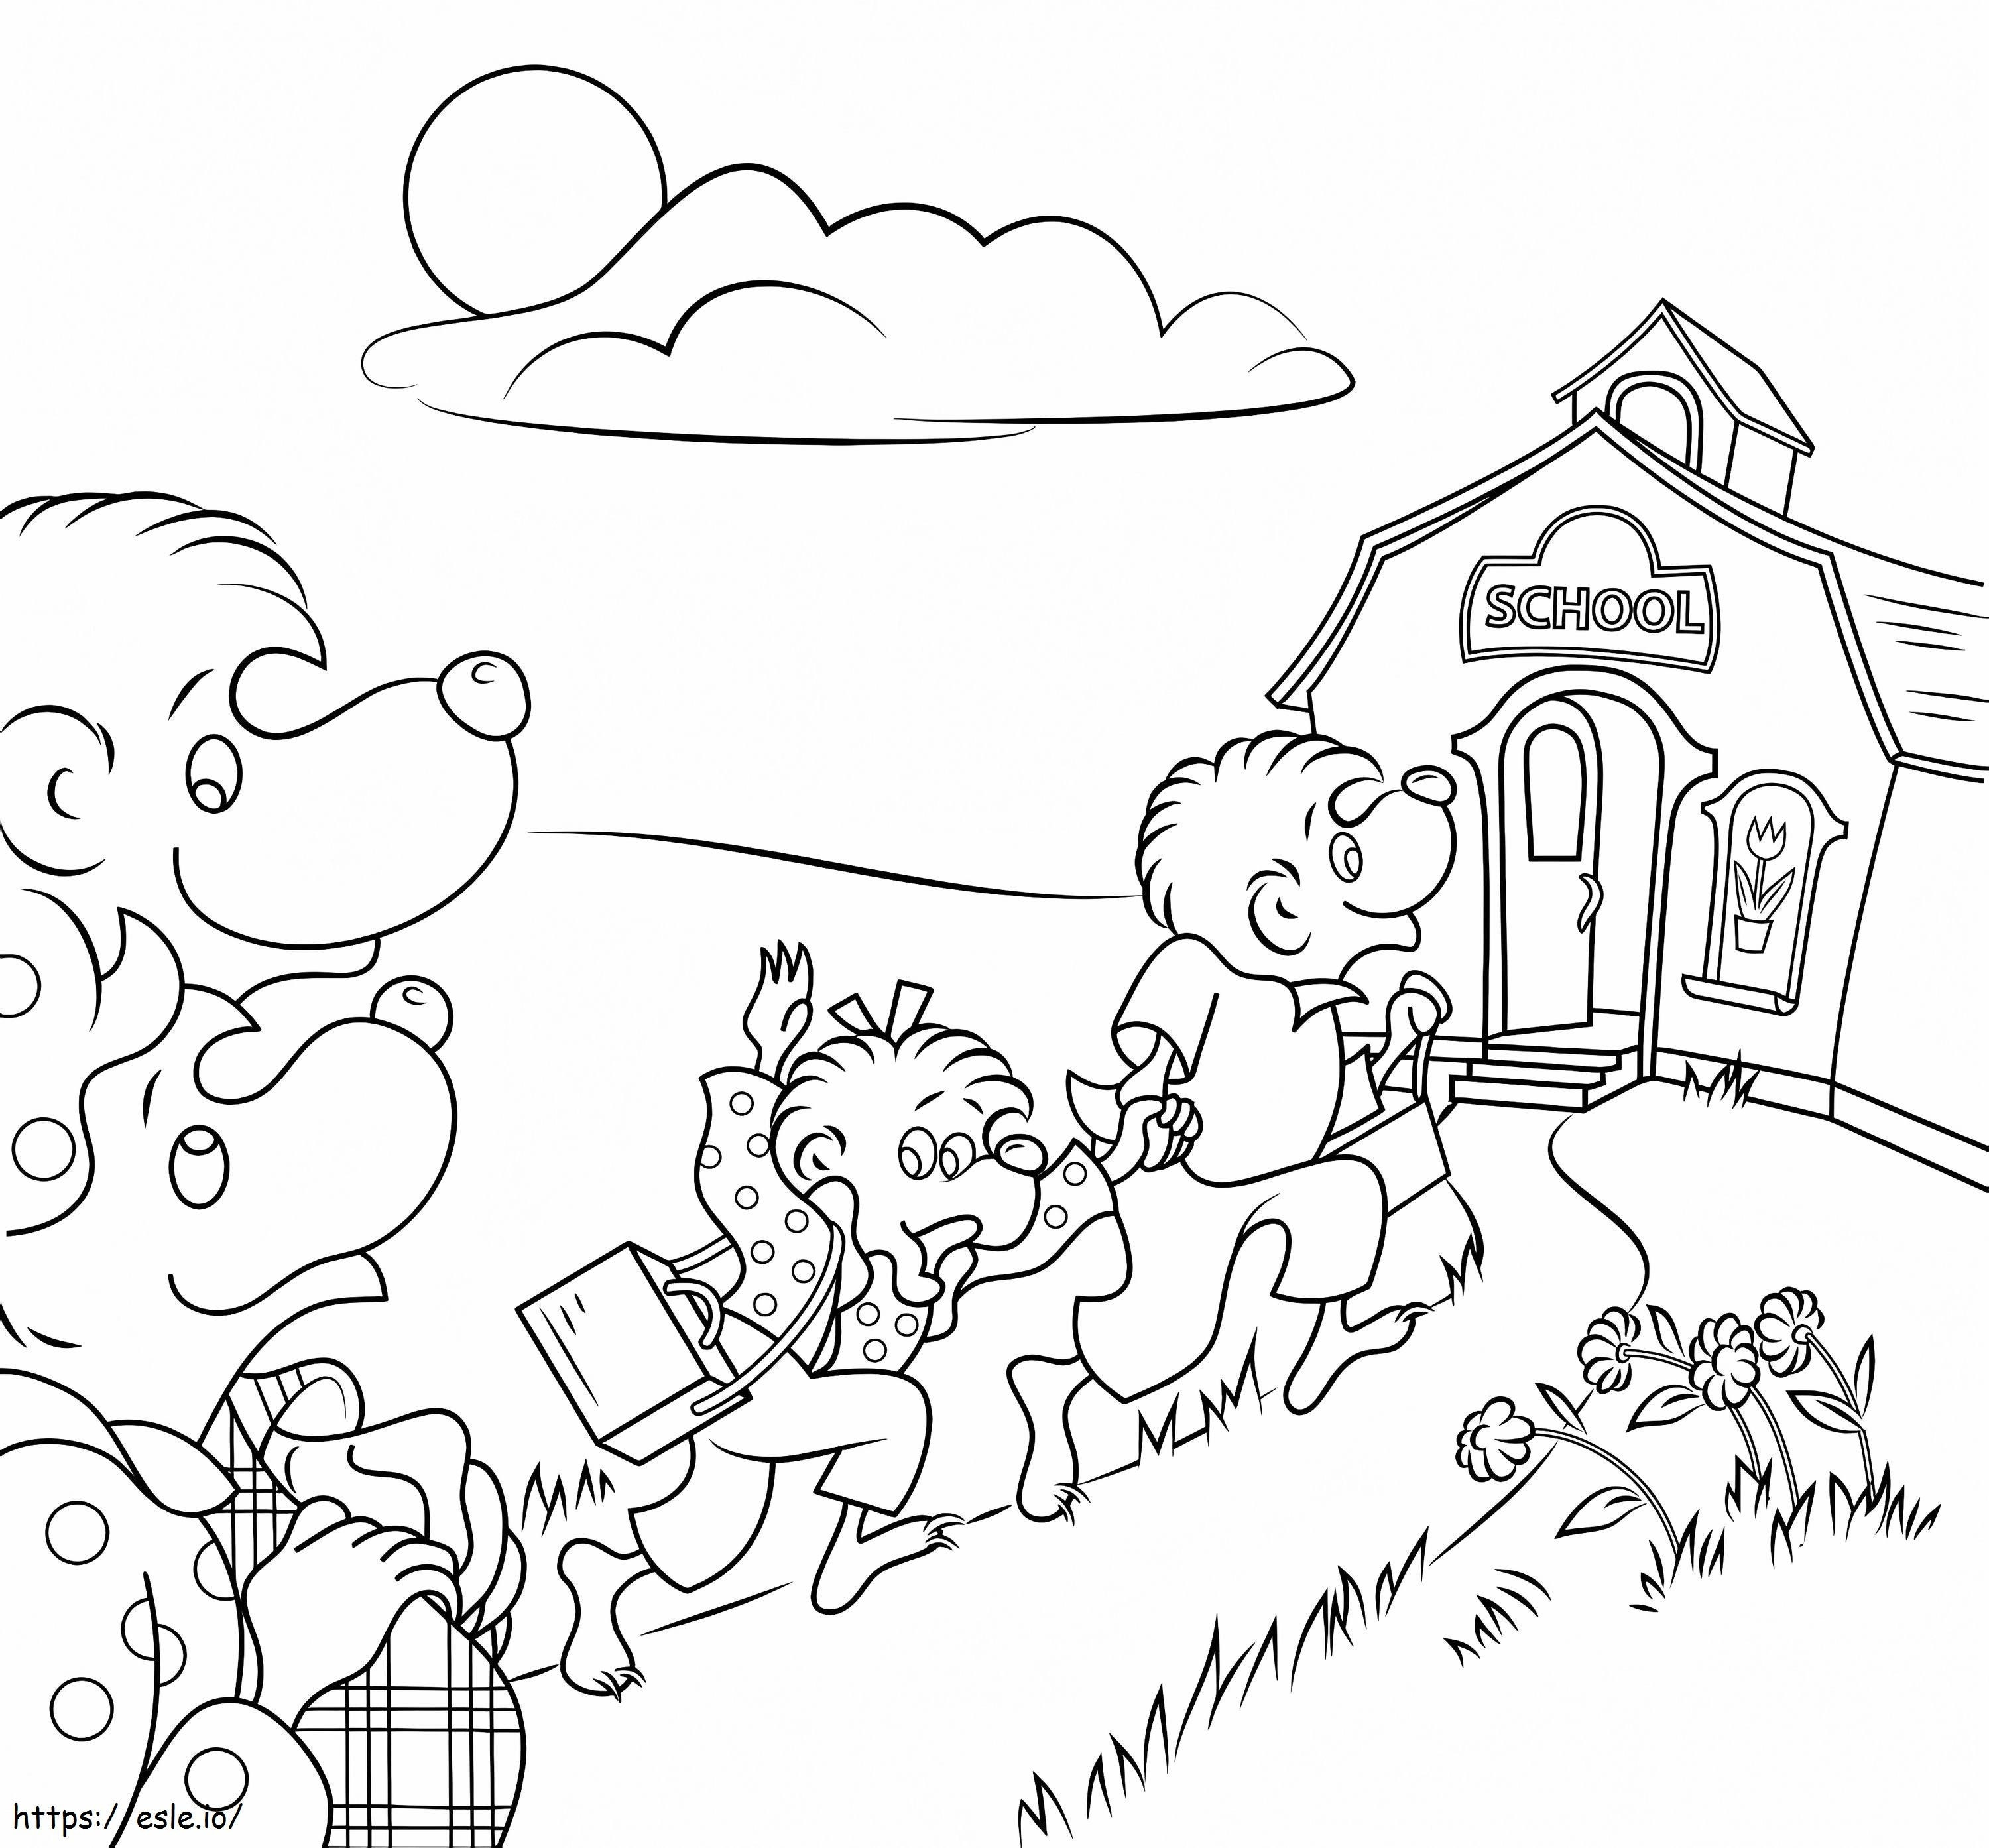 Ursos Berenstain vão à escola para colorir